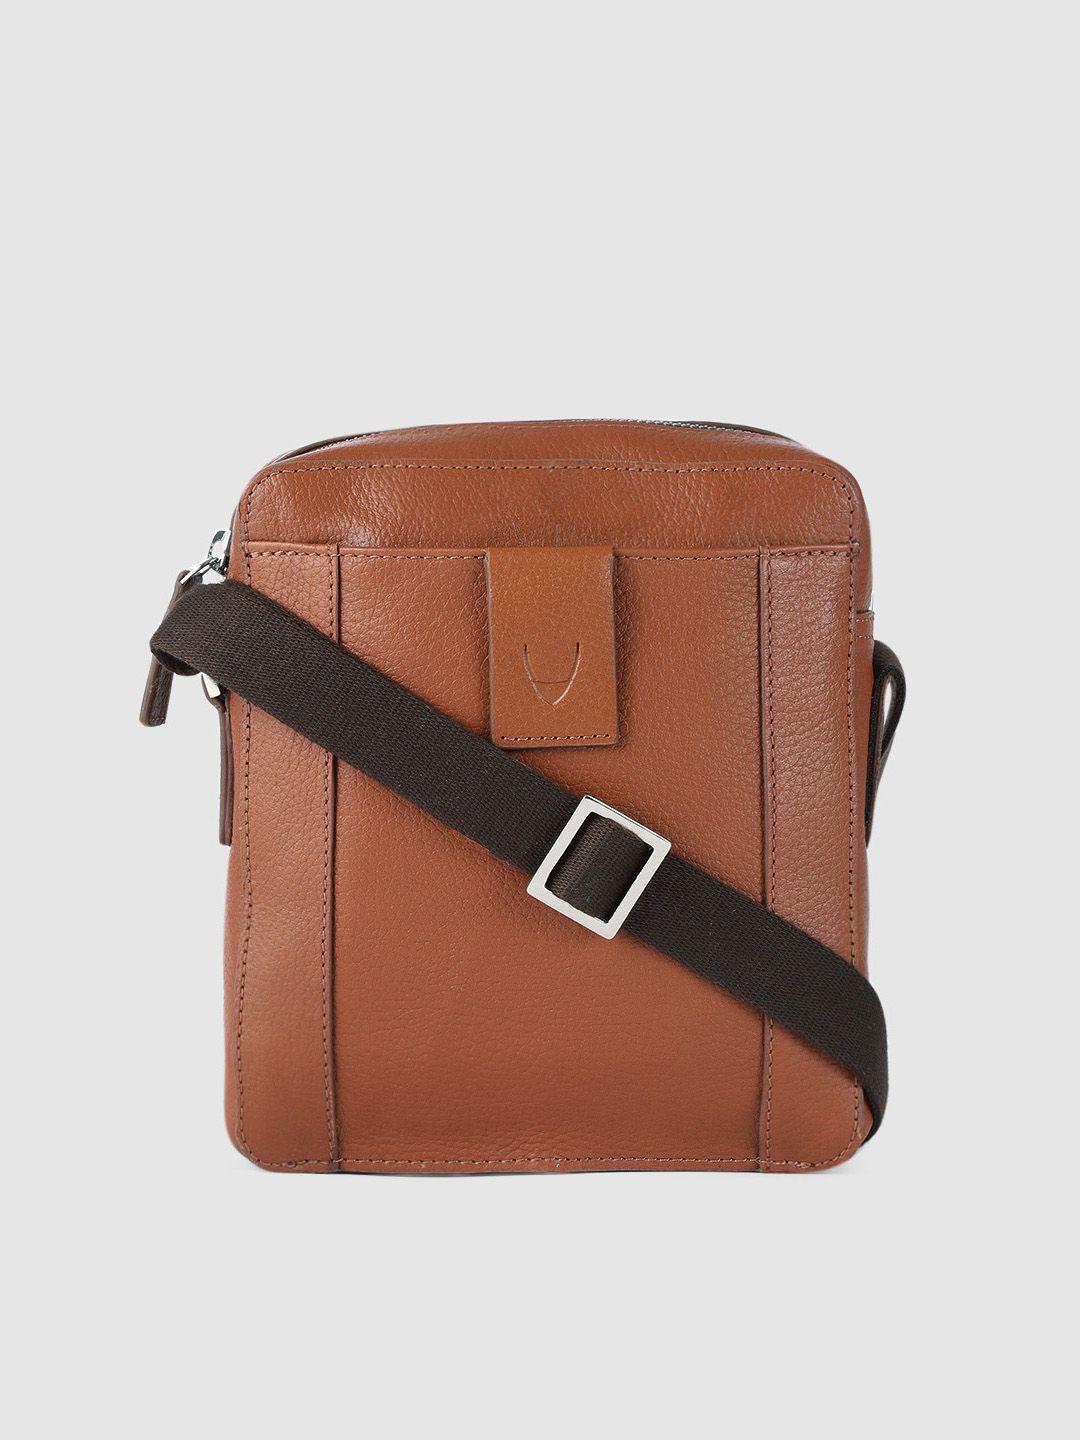 hidesign men brown solid leather messenger bag